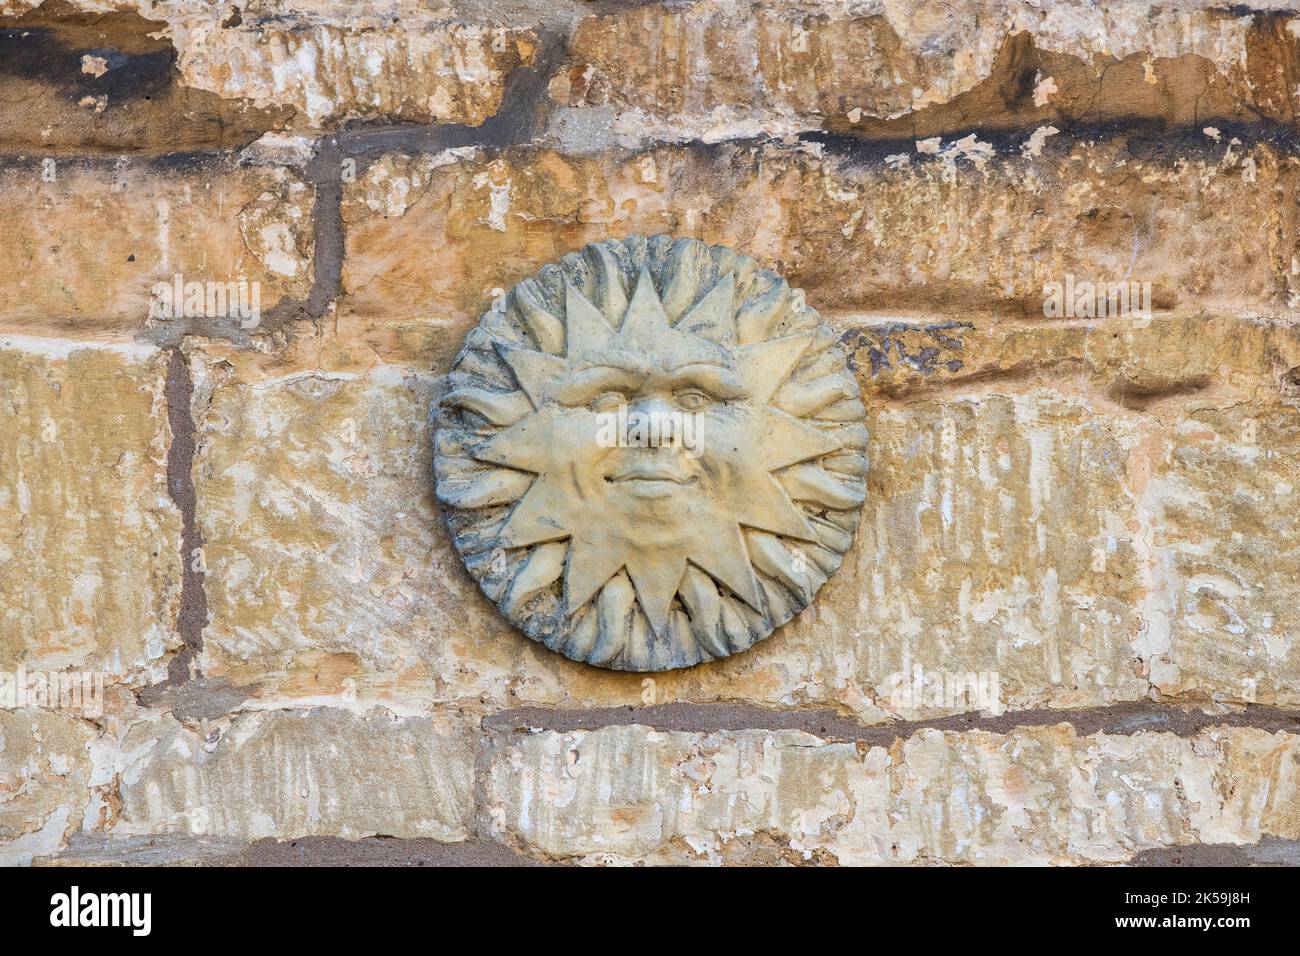 Soleil de pierre sur un mur de maison en pierre de cotswold. Cotswolds, Angleterre Banque D'Images